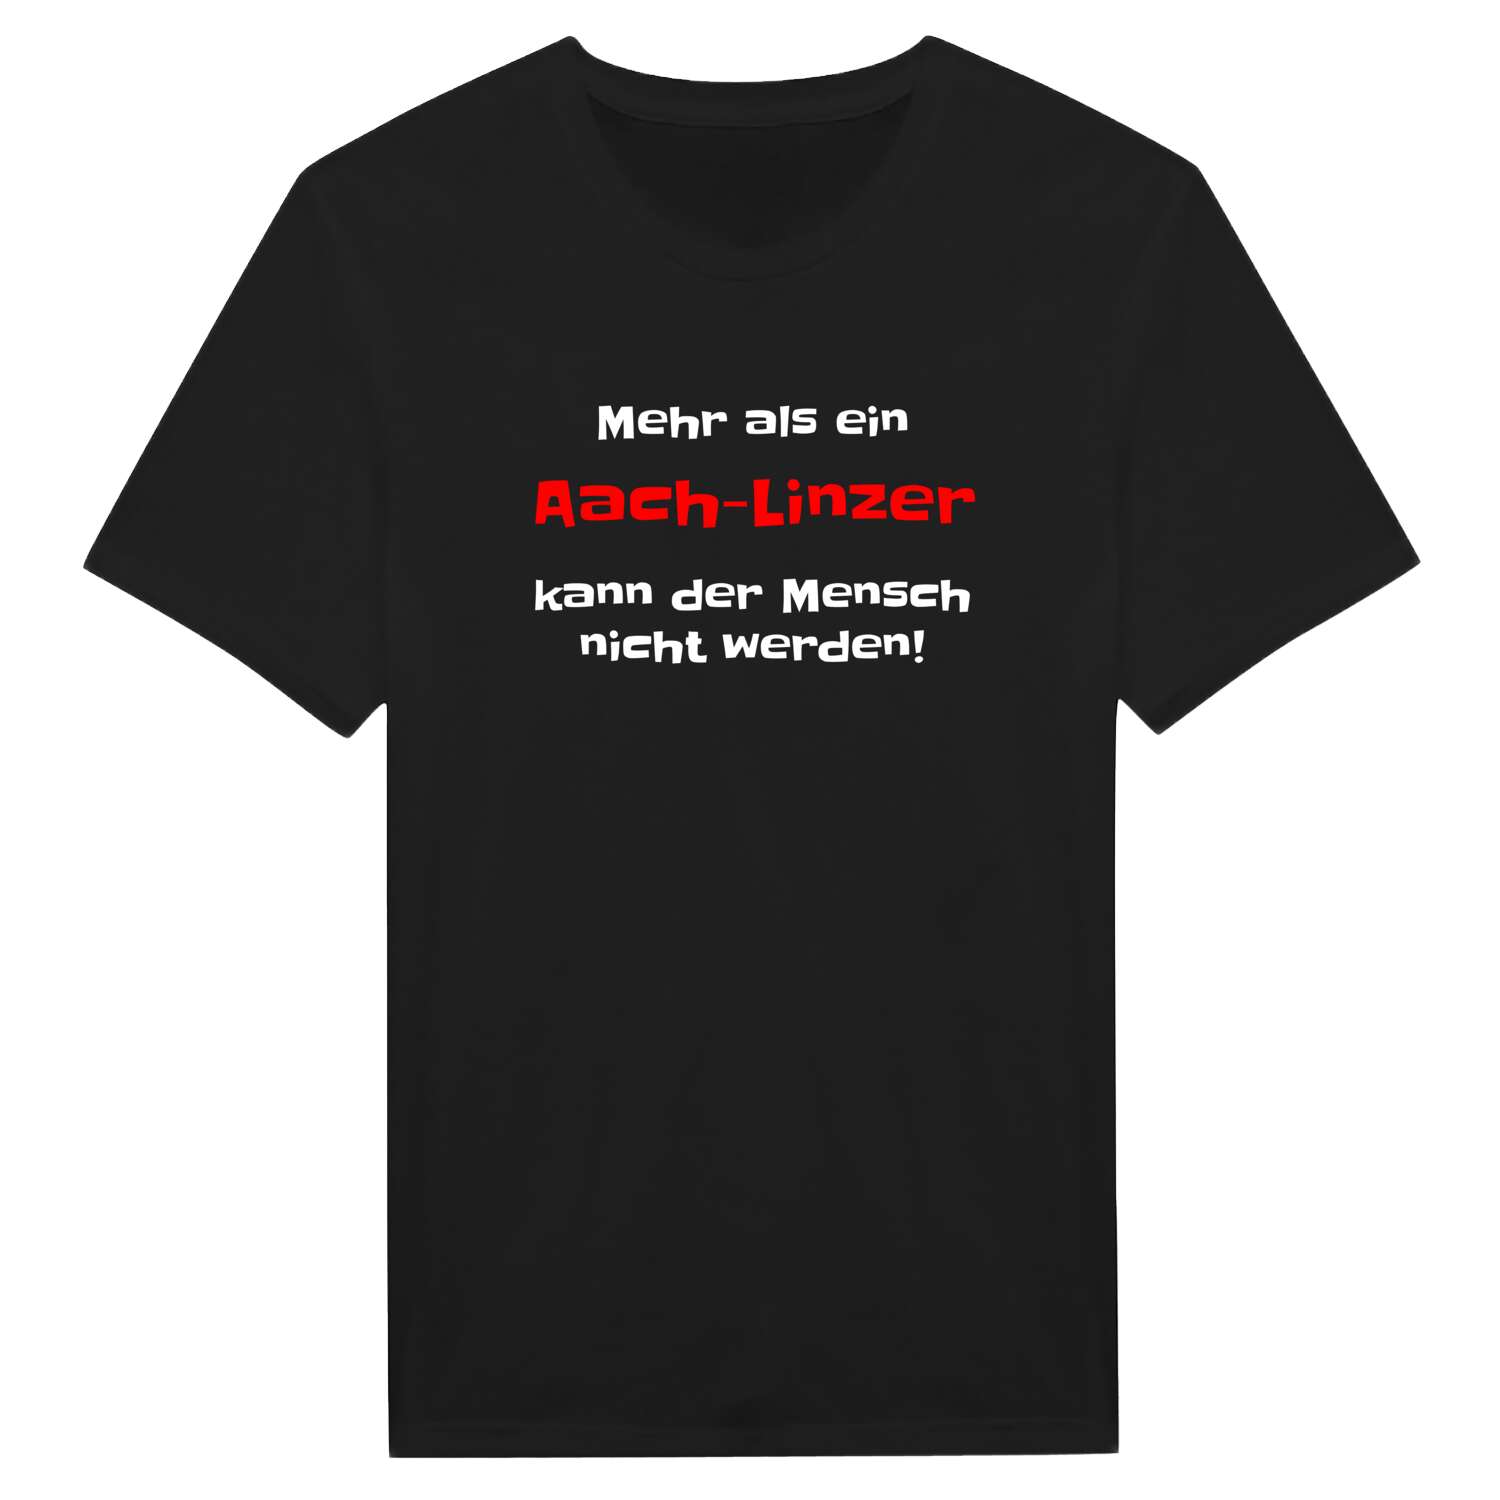 Aach-Linz T-Shirt »Mehr als ein«